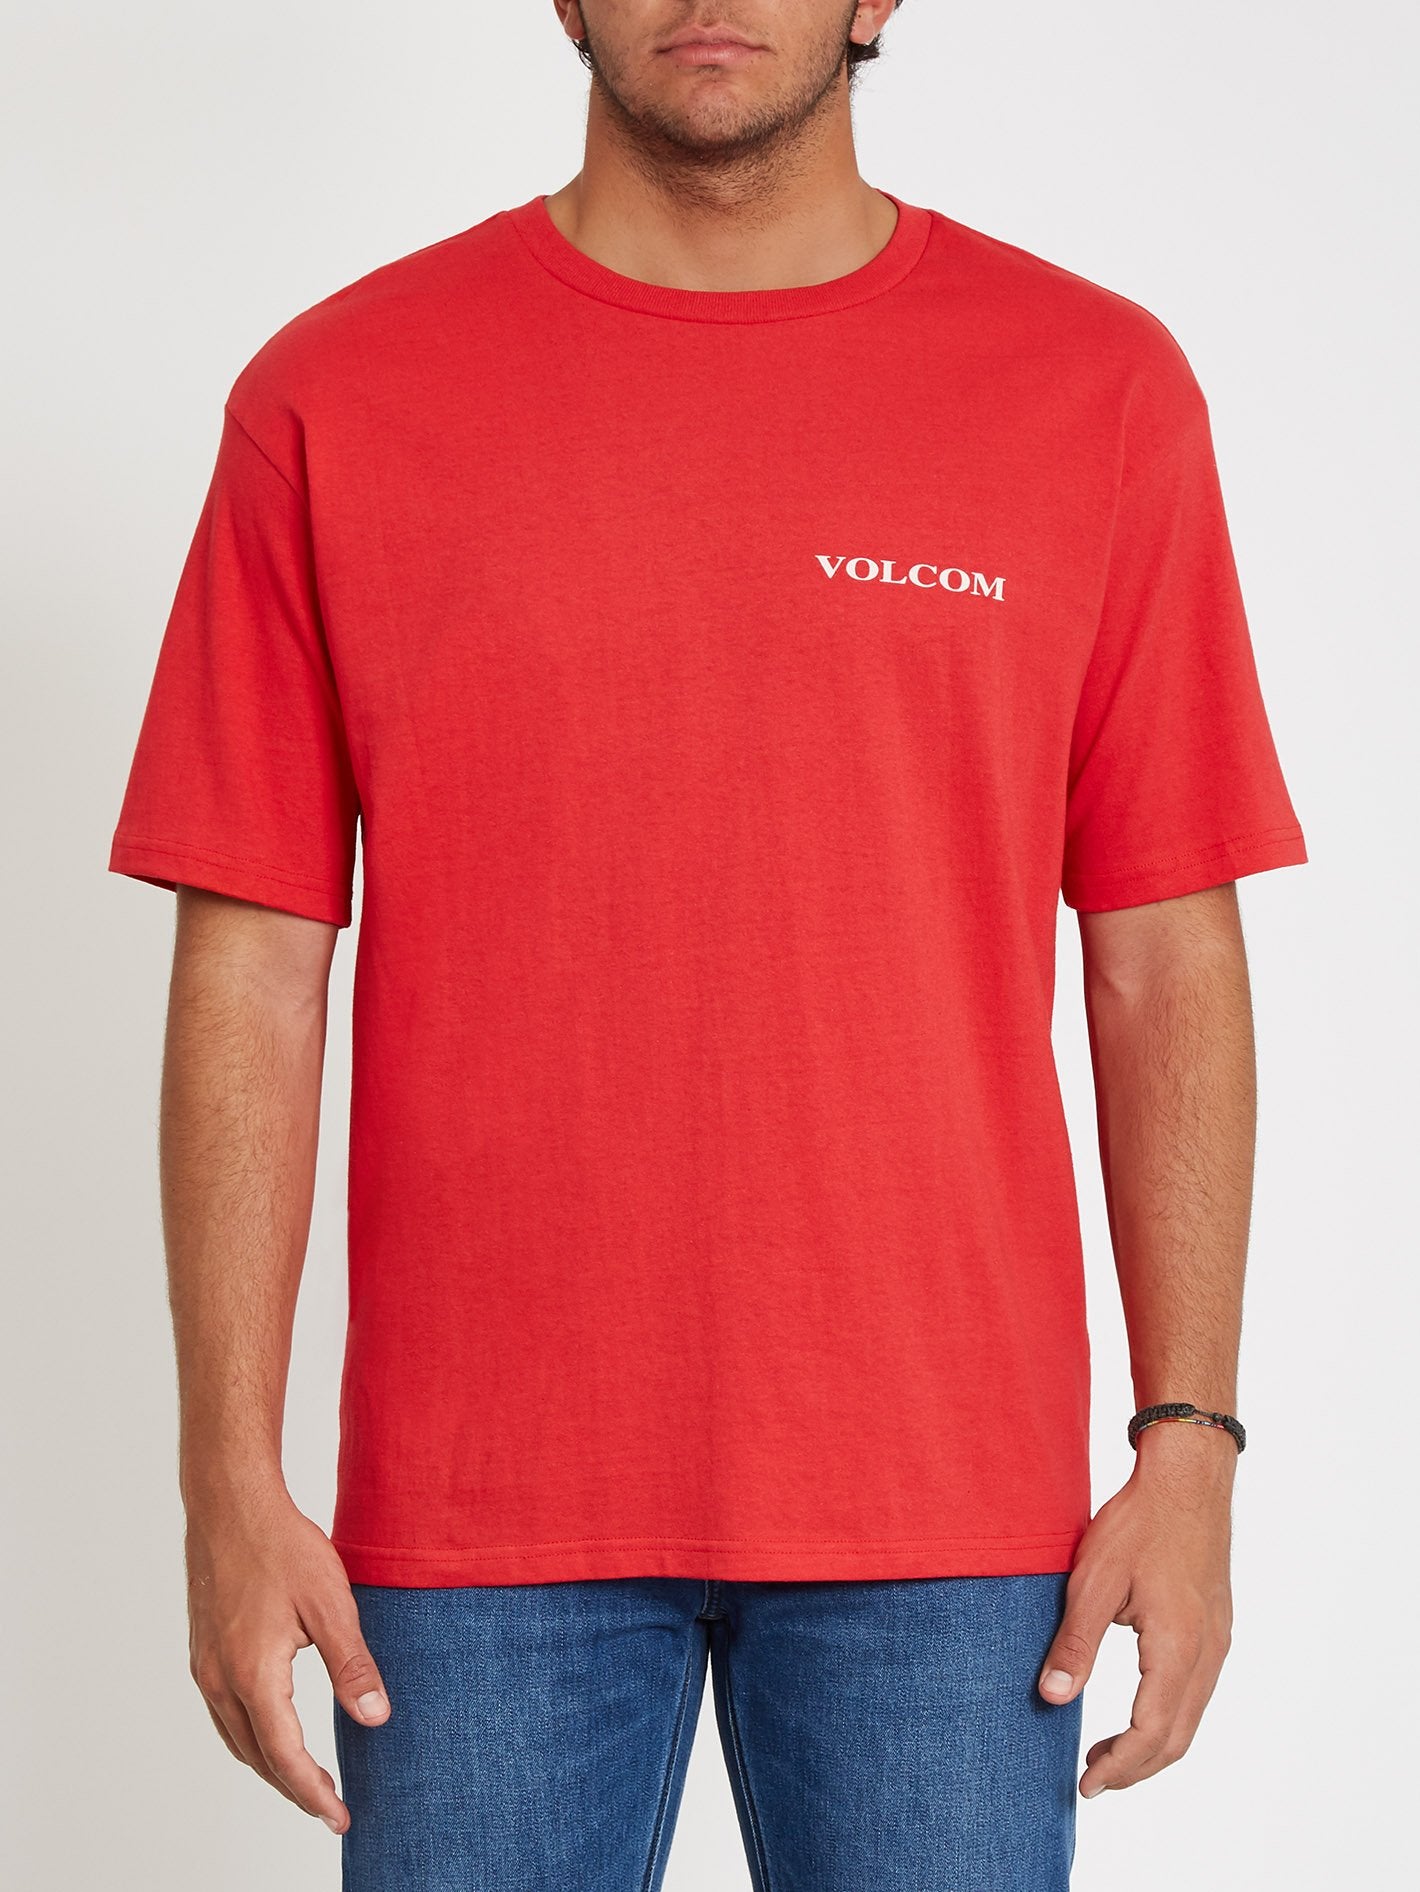 Volcom T-shirt - Red – Europe